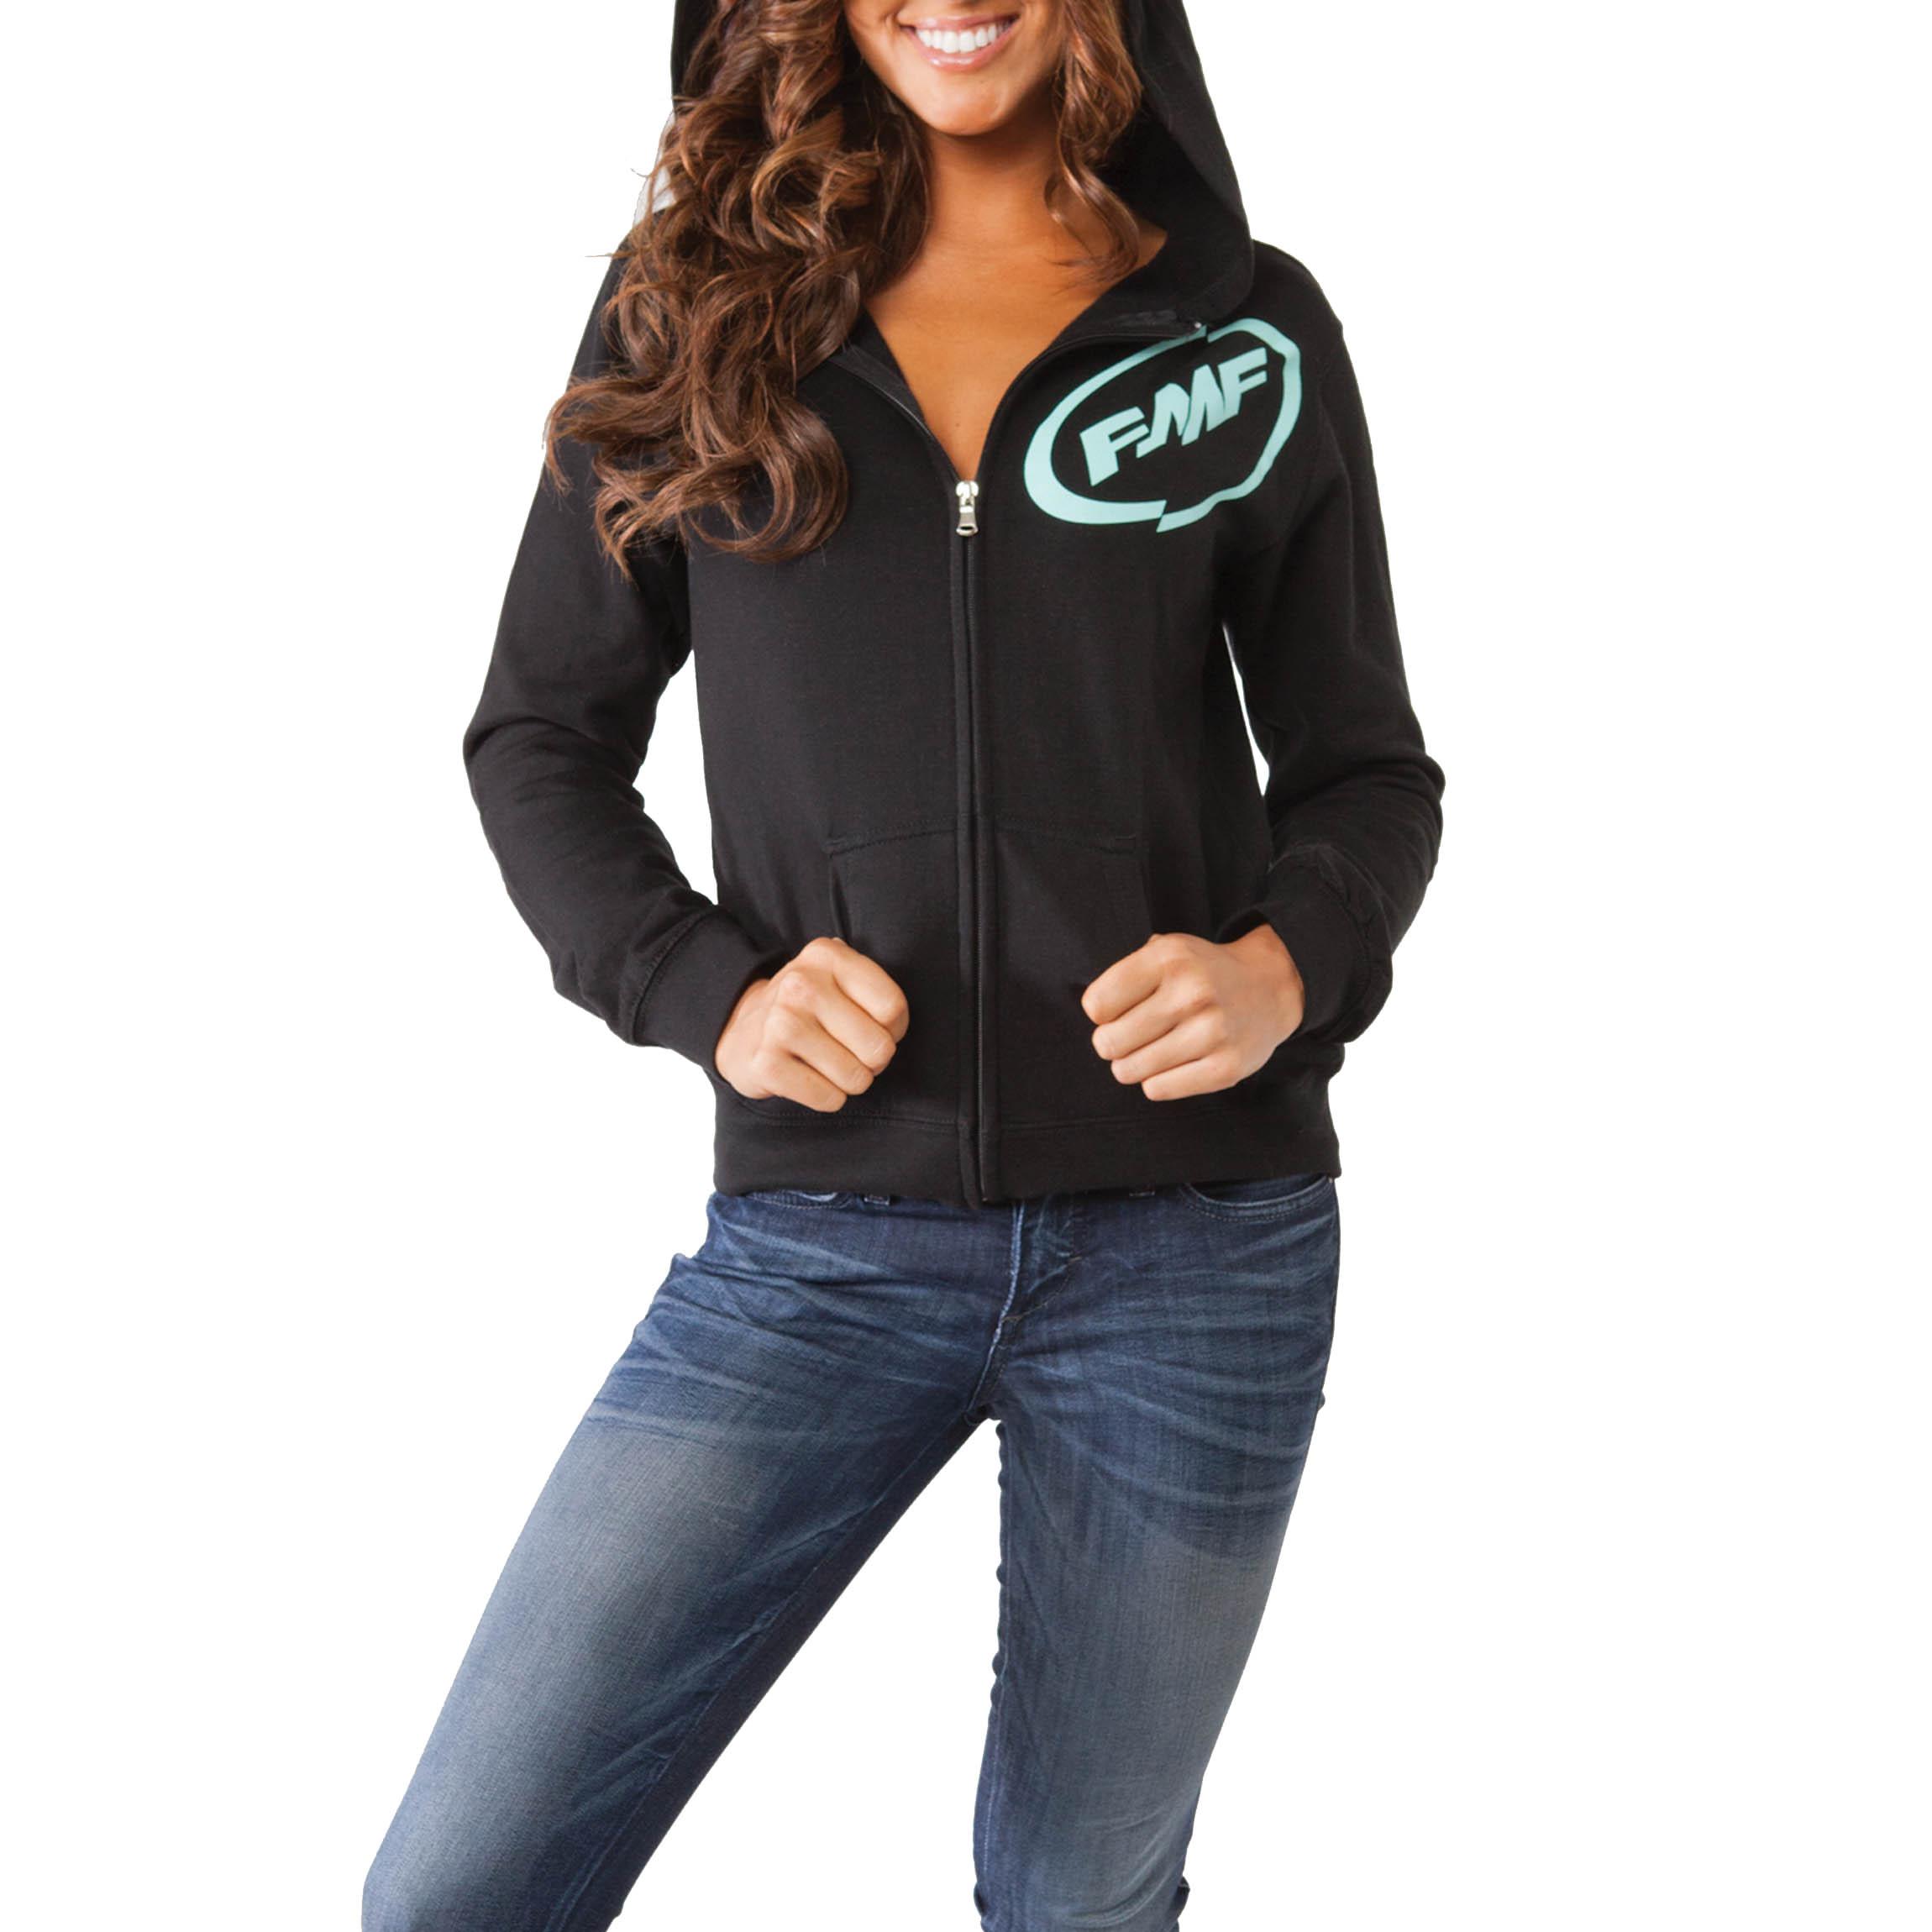 Fmf apparel women's glitz zip-up hoodie motorcycle sweatshirts